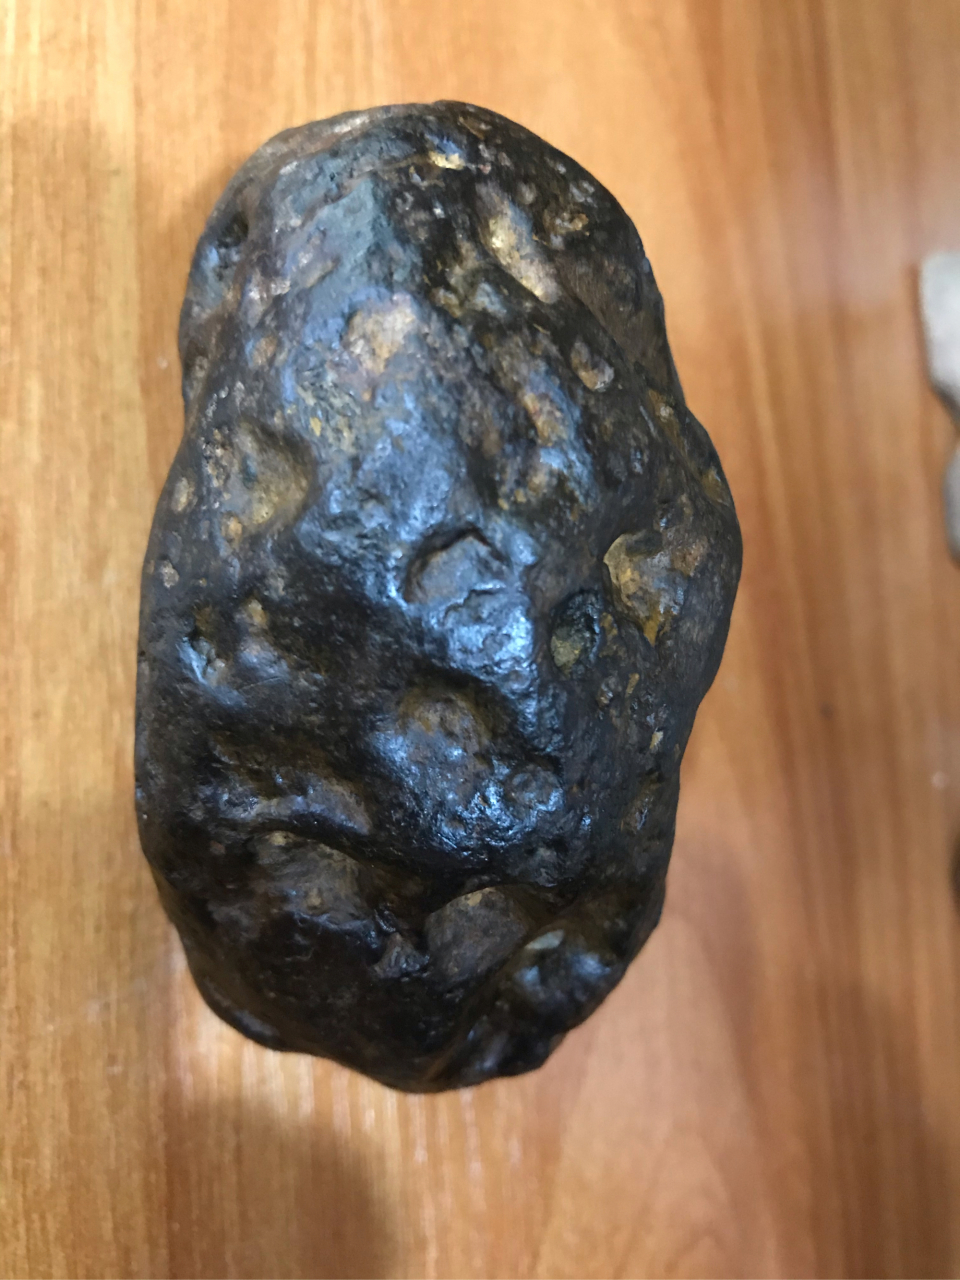 【陨石鉴赏】标准的石铁陨石,特征完美,坚硬沉重,中磁